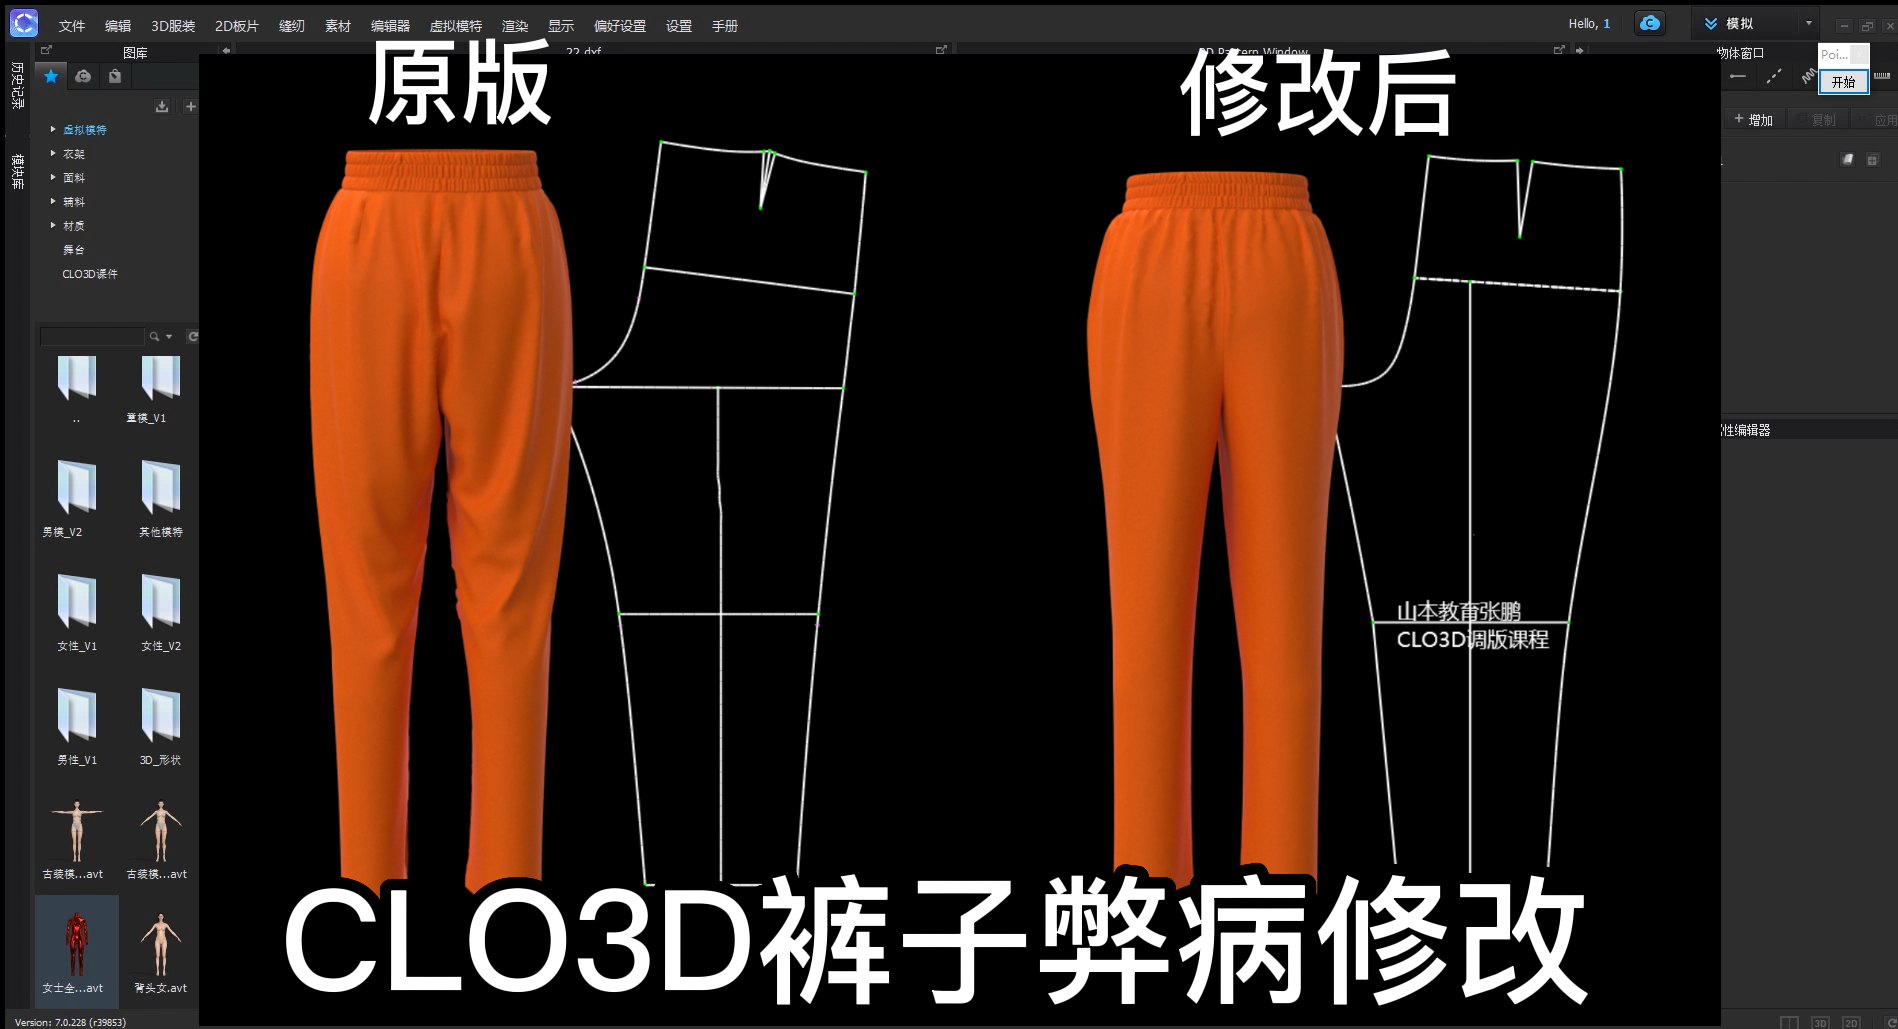 37CLO3D松紧裤调版裤型改版-调整版型.png